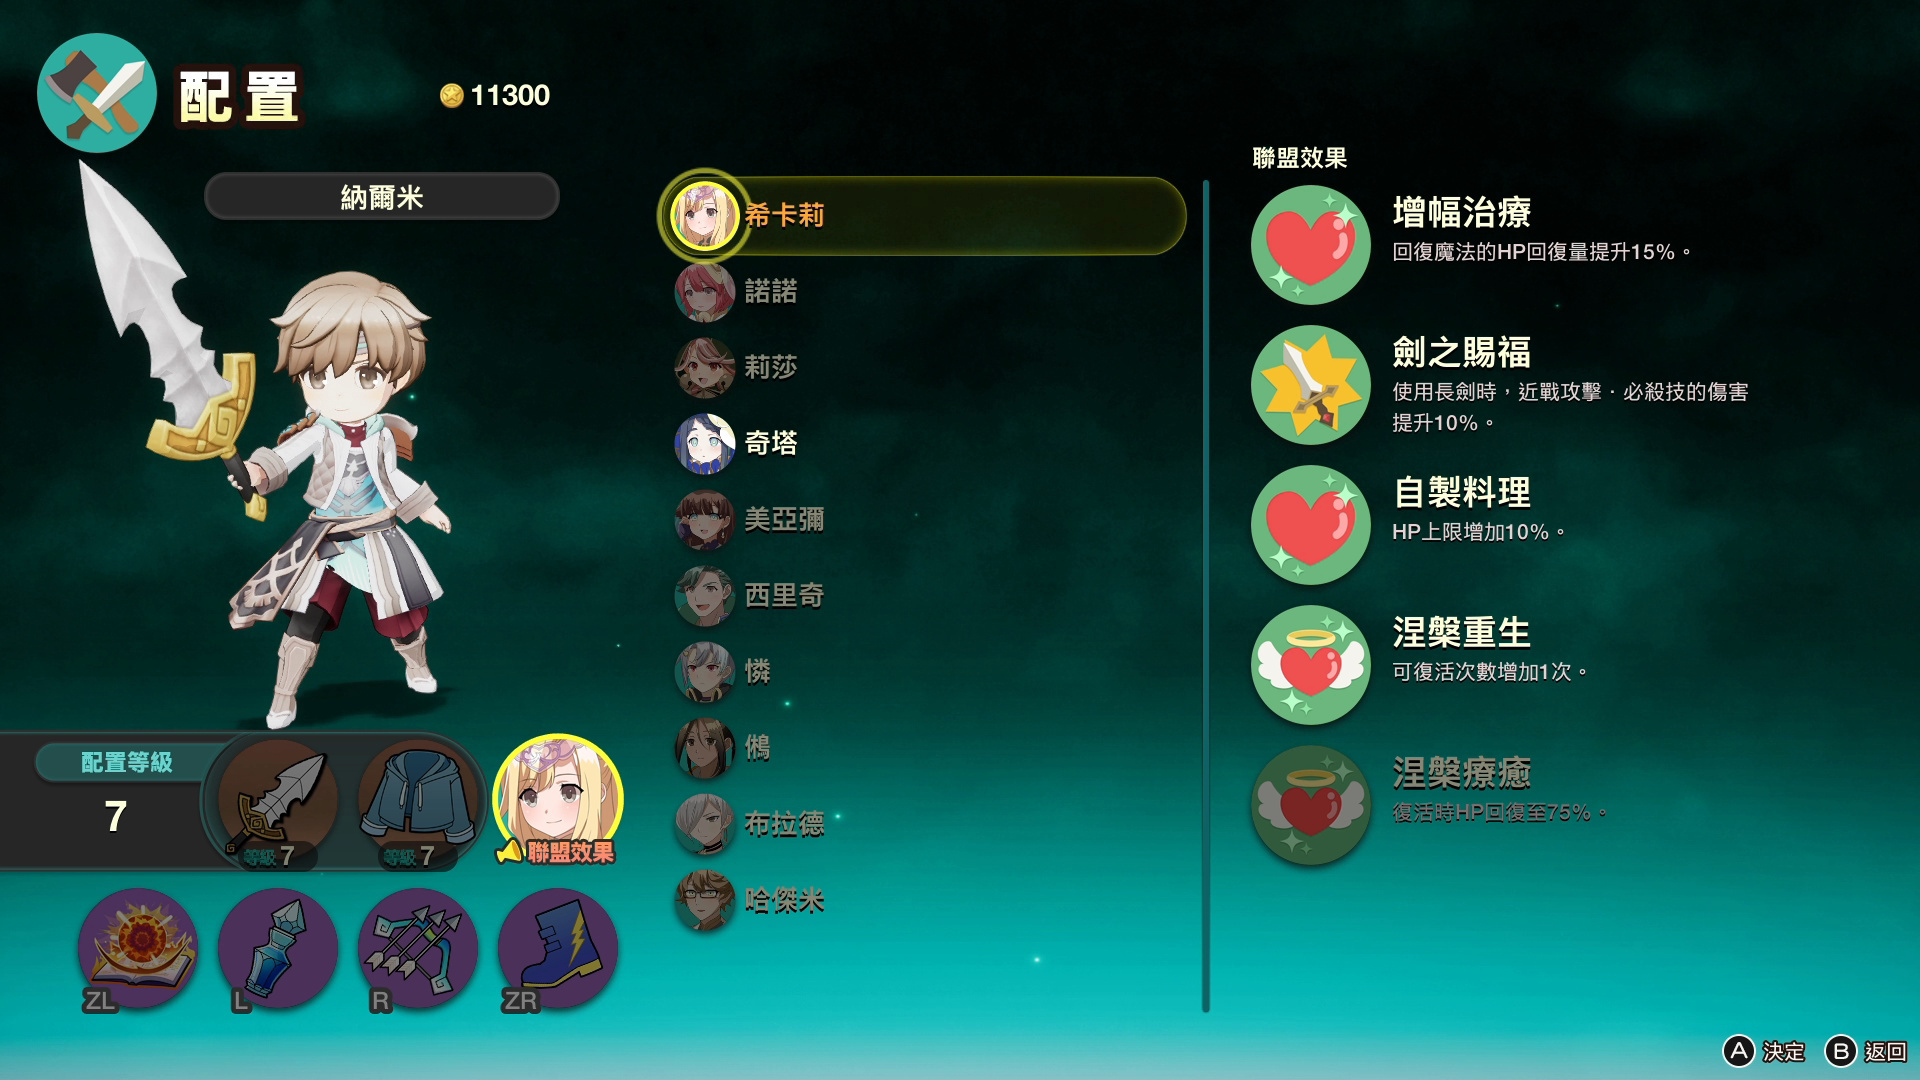 穿梭幻想及现实的动作 RPG《艾伦塔罗斯奇历》确定推出中文版